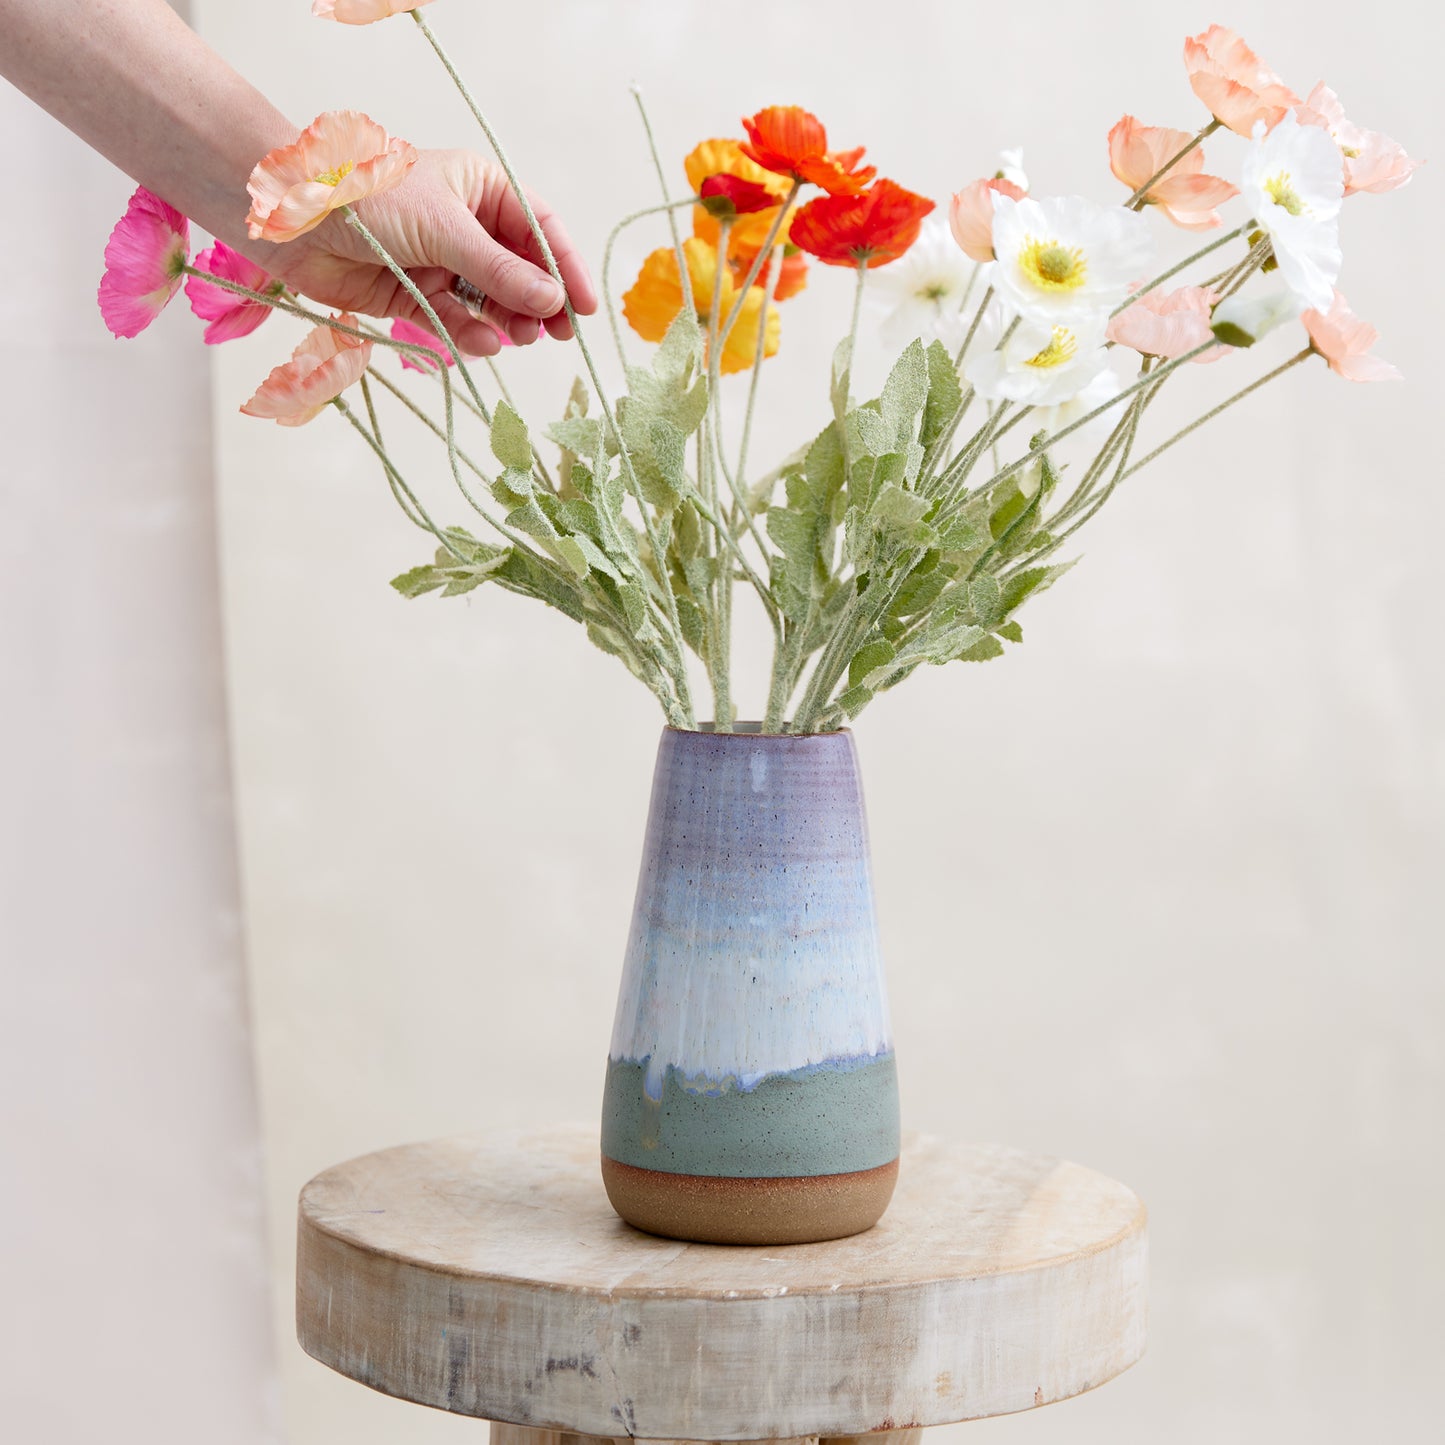 Coastal Handmade Ceramic Teardrop Vase - Large